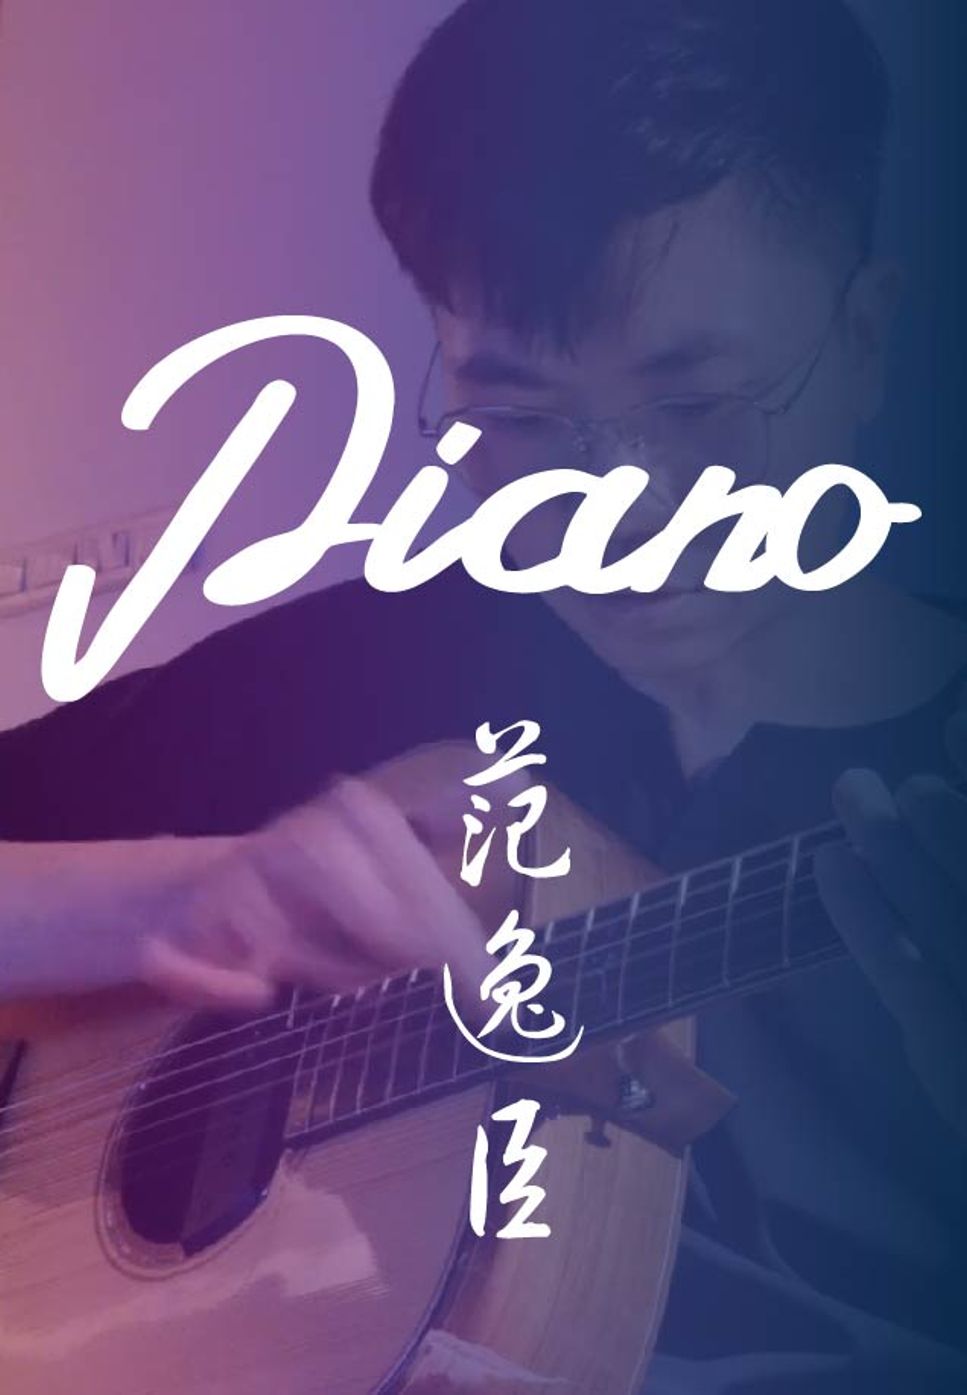 Vann Fan Yi Chen - Piano (Fingerstyle) by HowMing